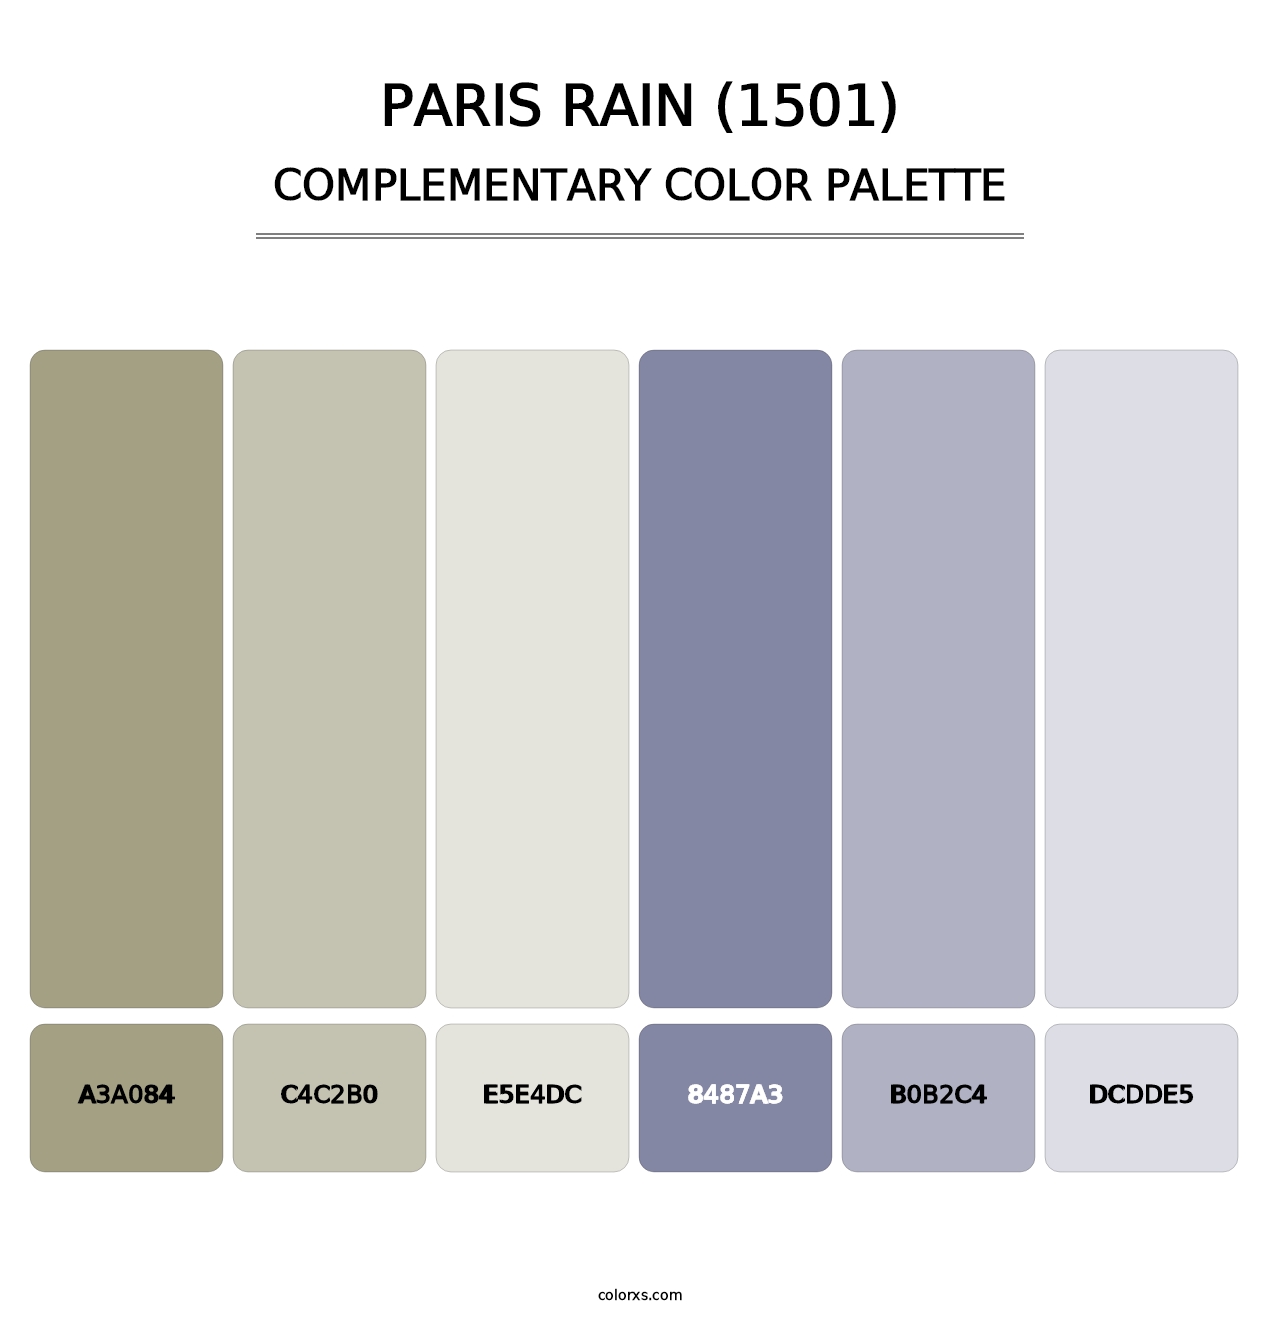 Paris Rain (1501) - Complementary Color Palette